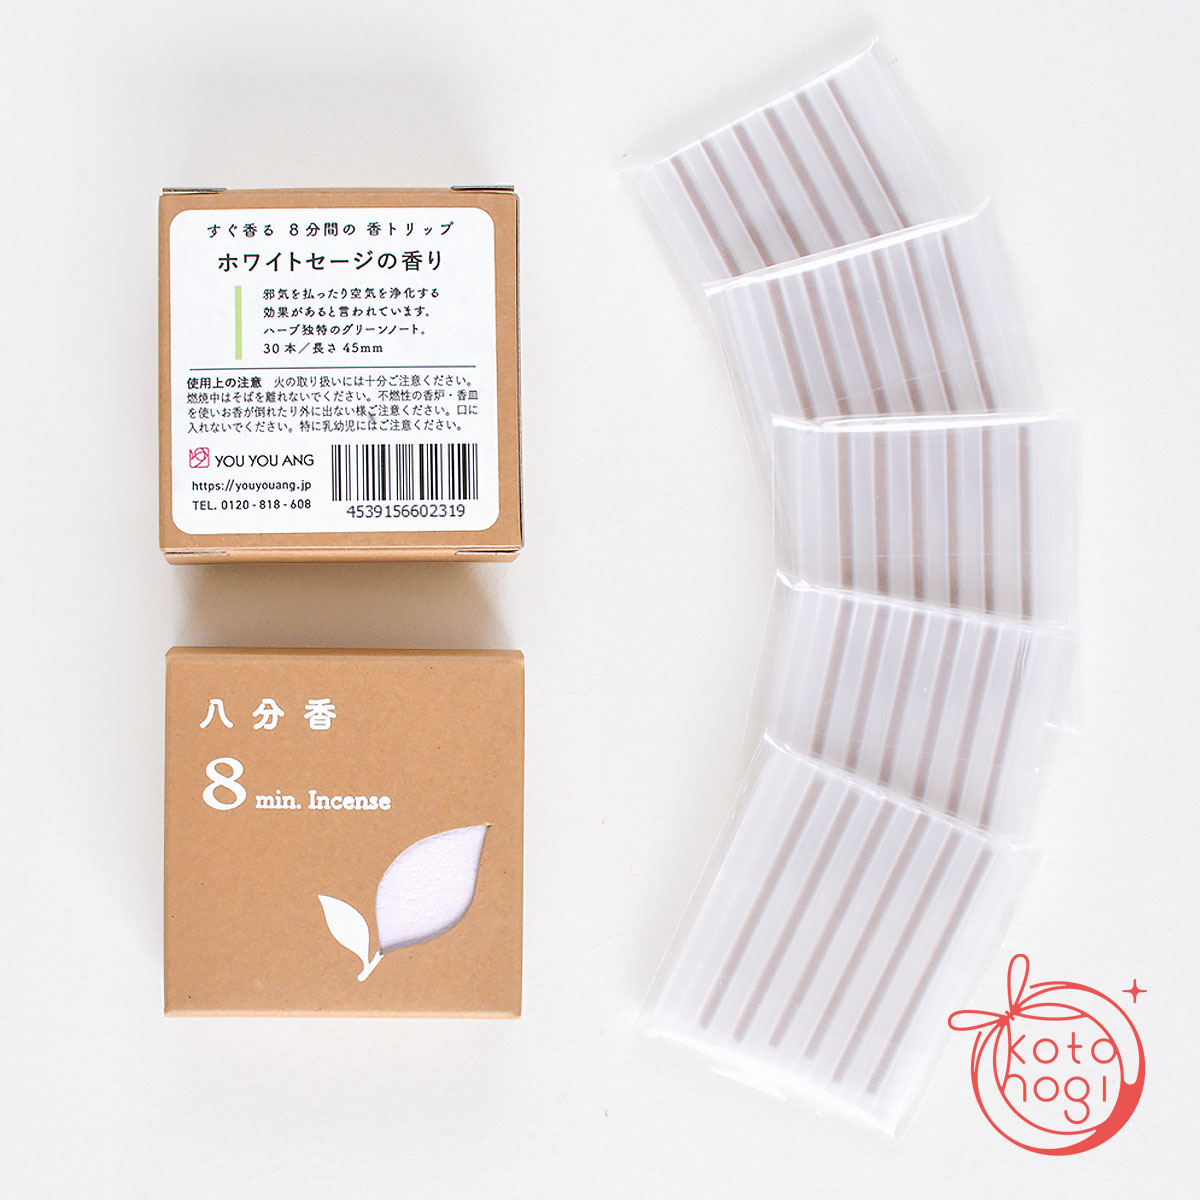 八分香-herb-ハーブ「ホワイトセージ」ミニお香 浄化画像